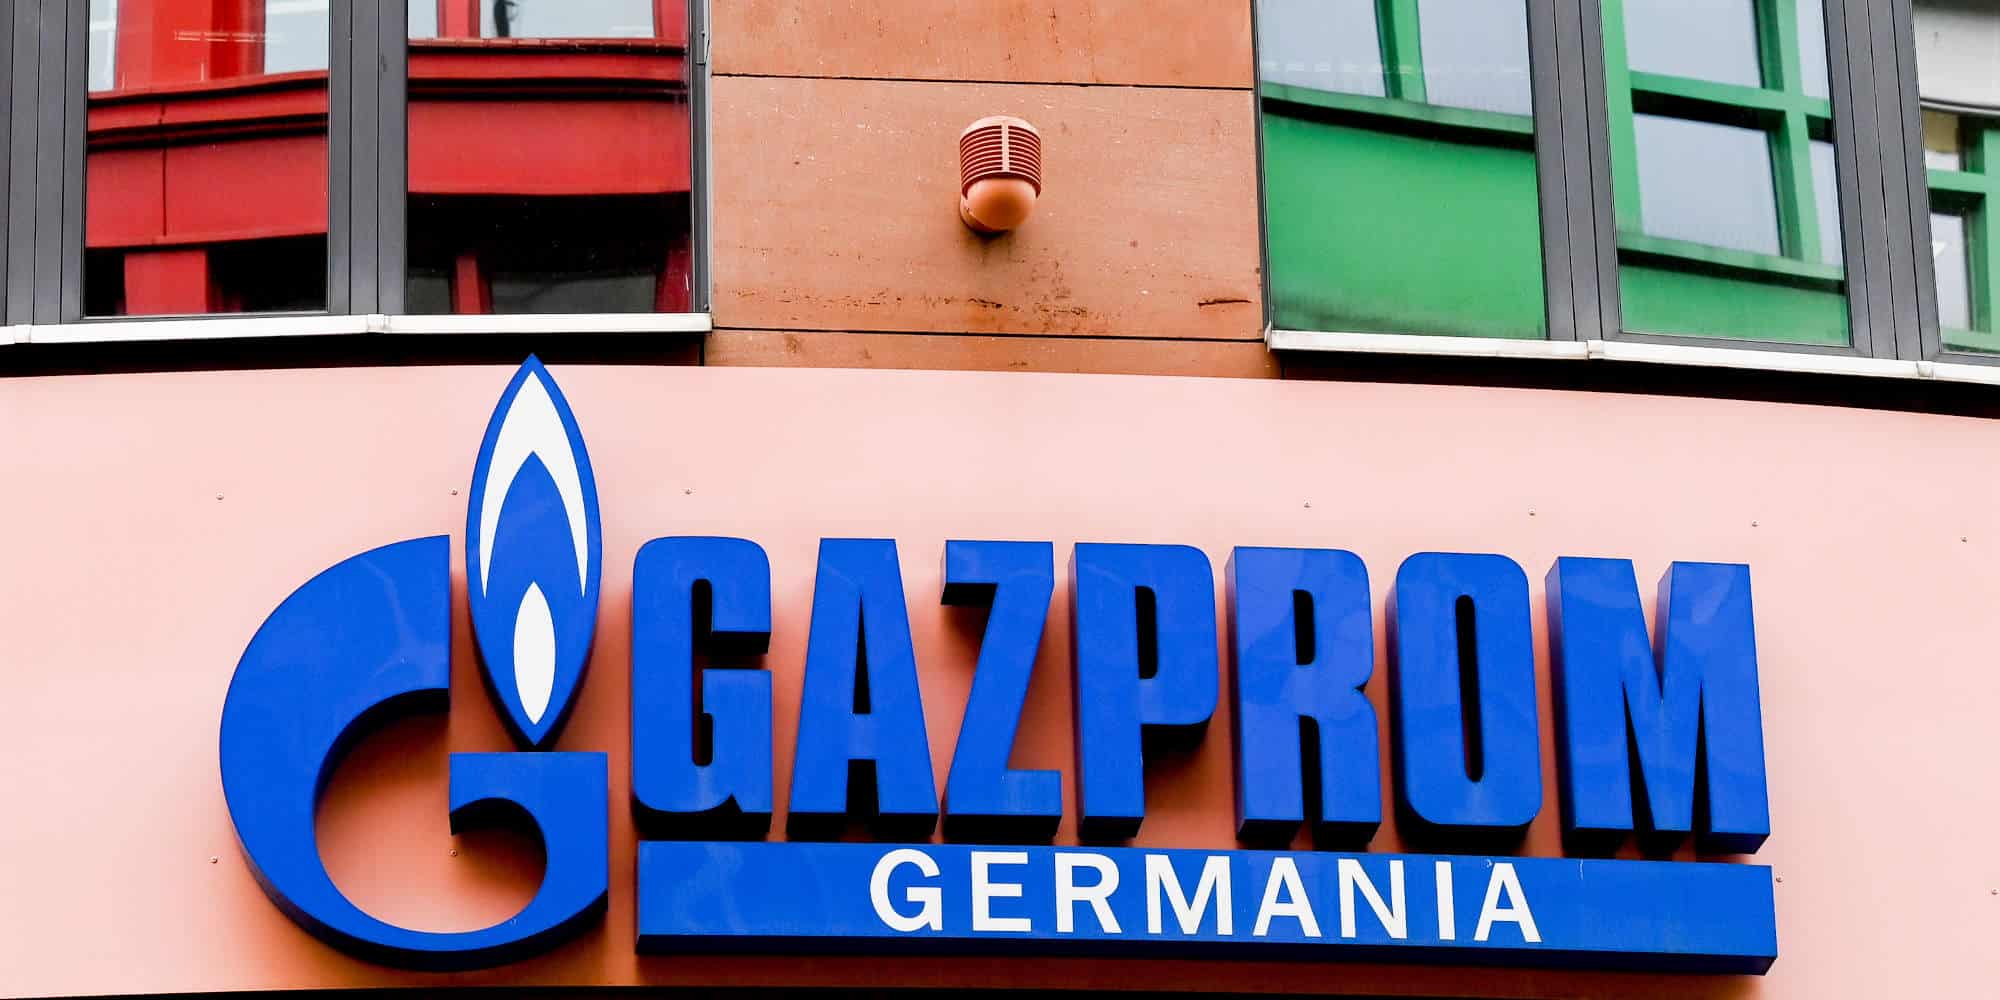 Η μαρκίζα της Gazprom Γερμανίας, πριν την ρωσική εισβολή που έφερε κυρώσεις στη Μόσχα από το σύνολο της ΕΕ